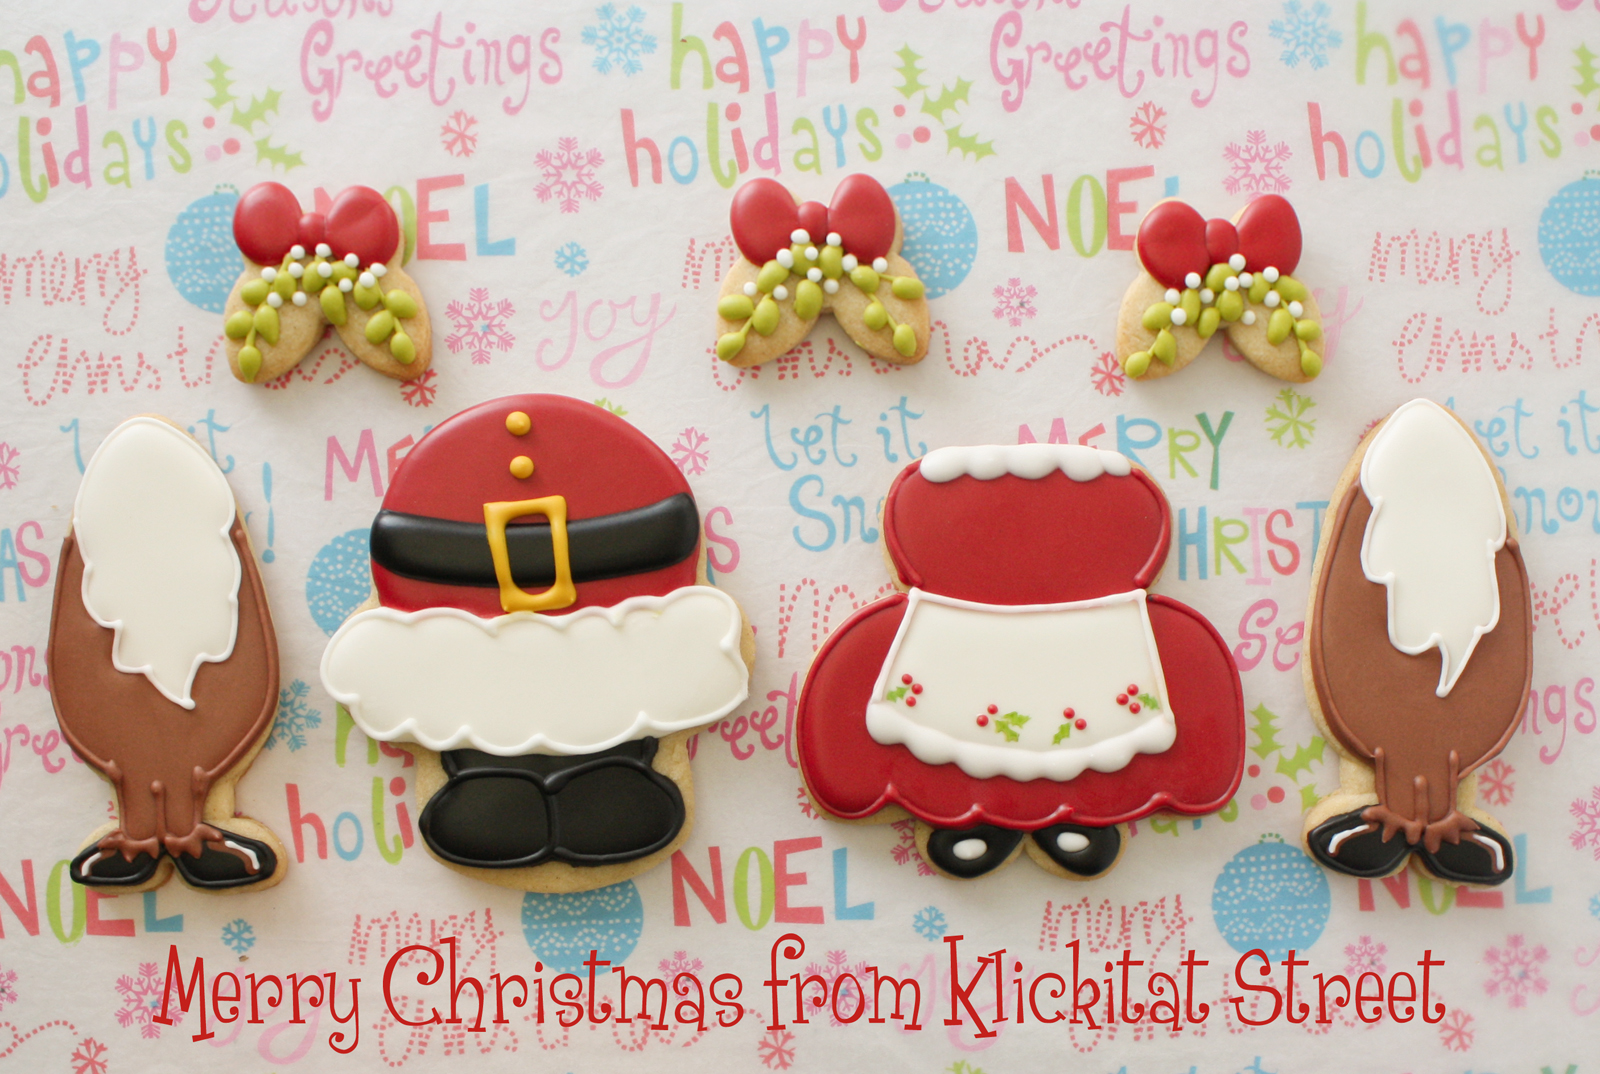 http://4.bp.blogspot.com/-dWGwnmfkETs/UMrrdnfAuQI/AAAAAAAADdQ/ZJATbXr3pGo/s1600/KlickitatStreet+Santa+Belly+Christmas+Cookies.jpg